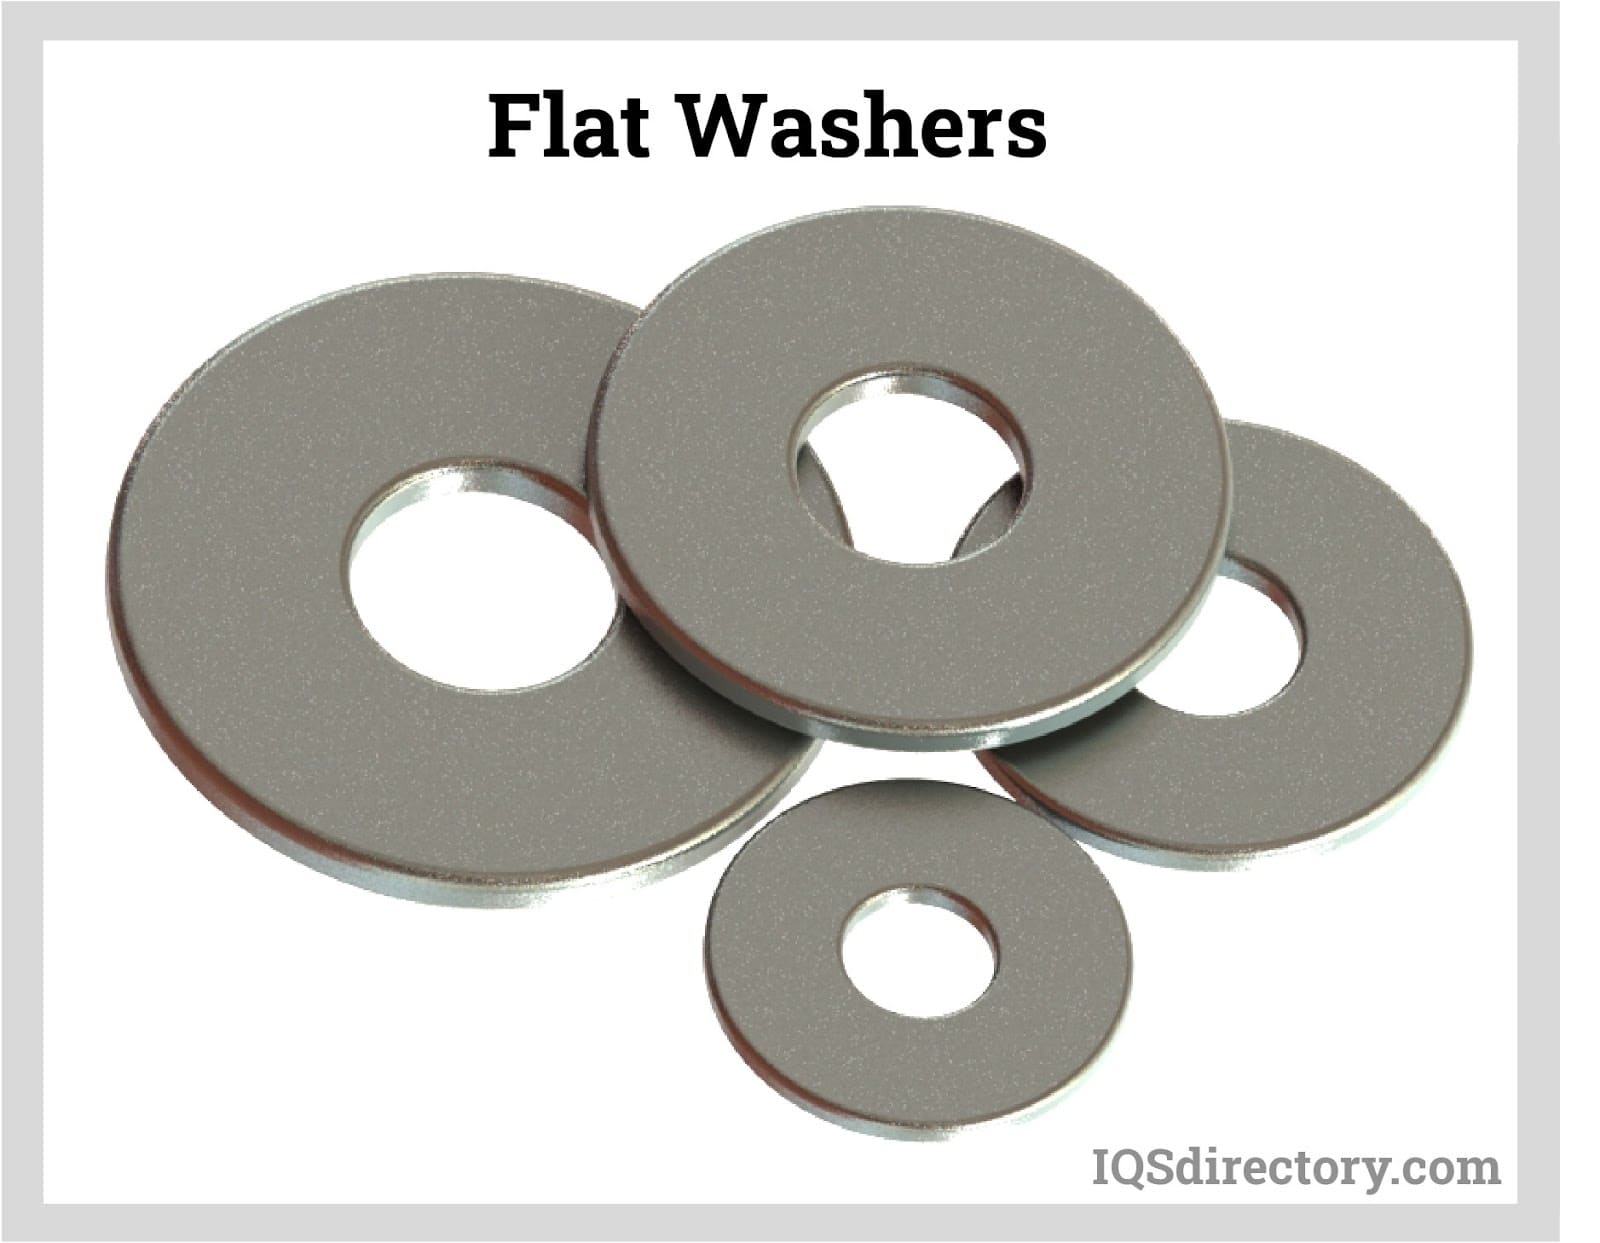 Flat Washers, Round Flat Washers